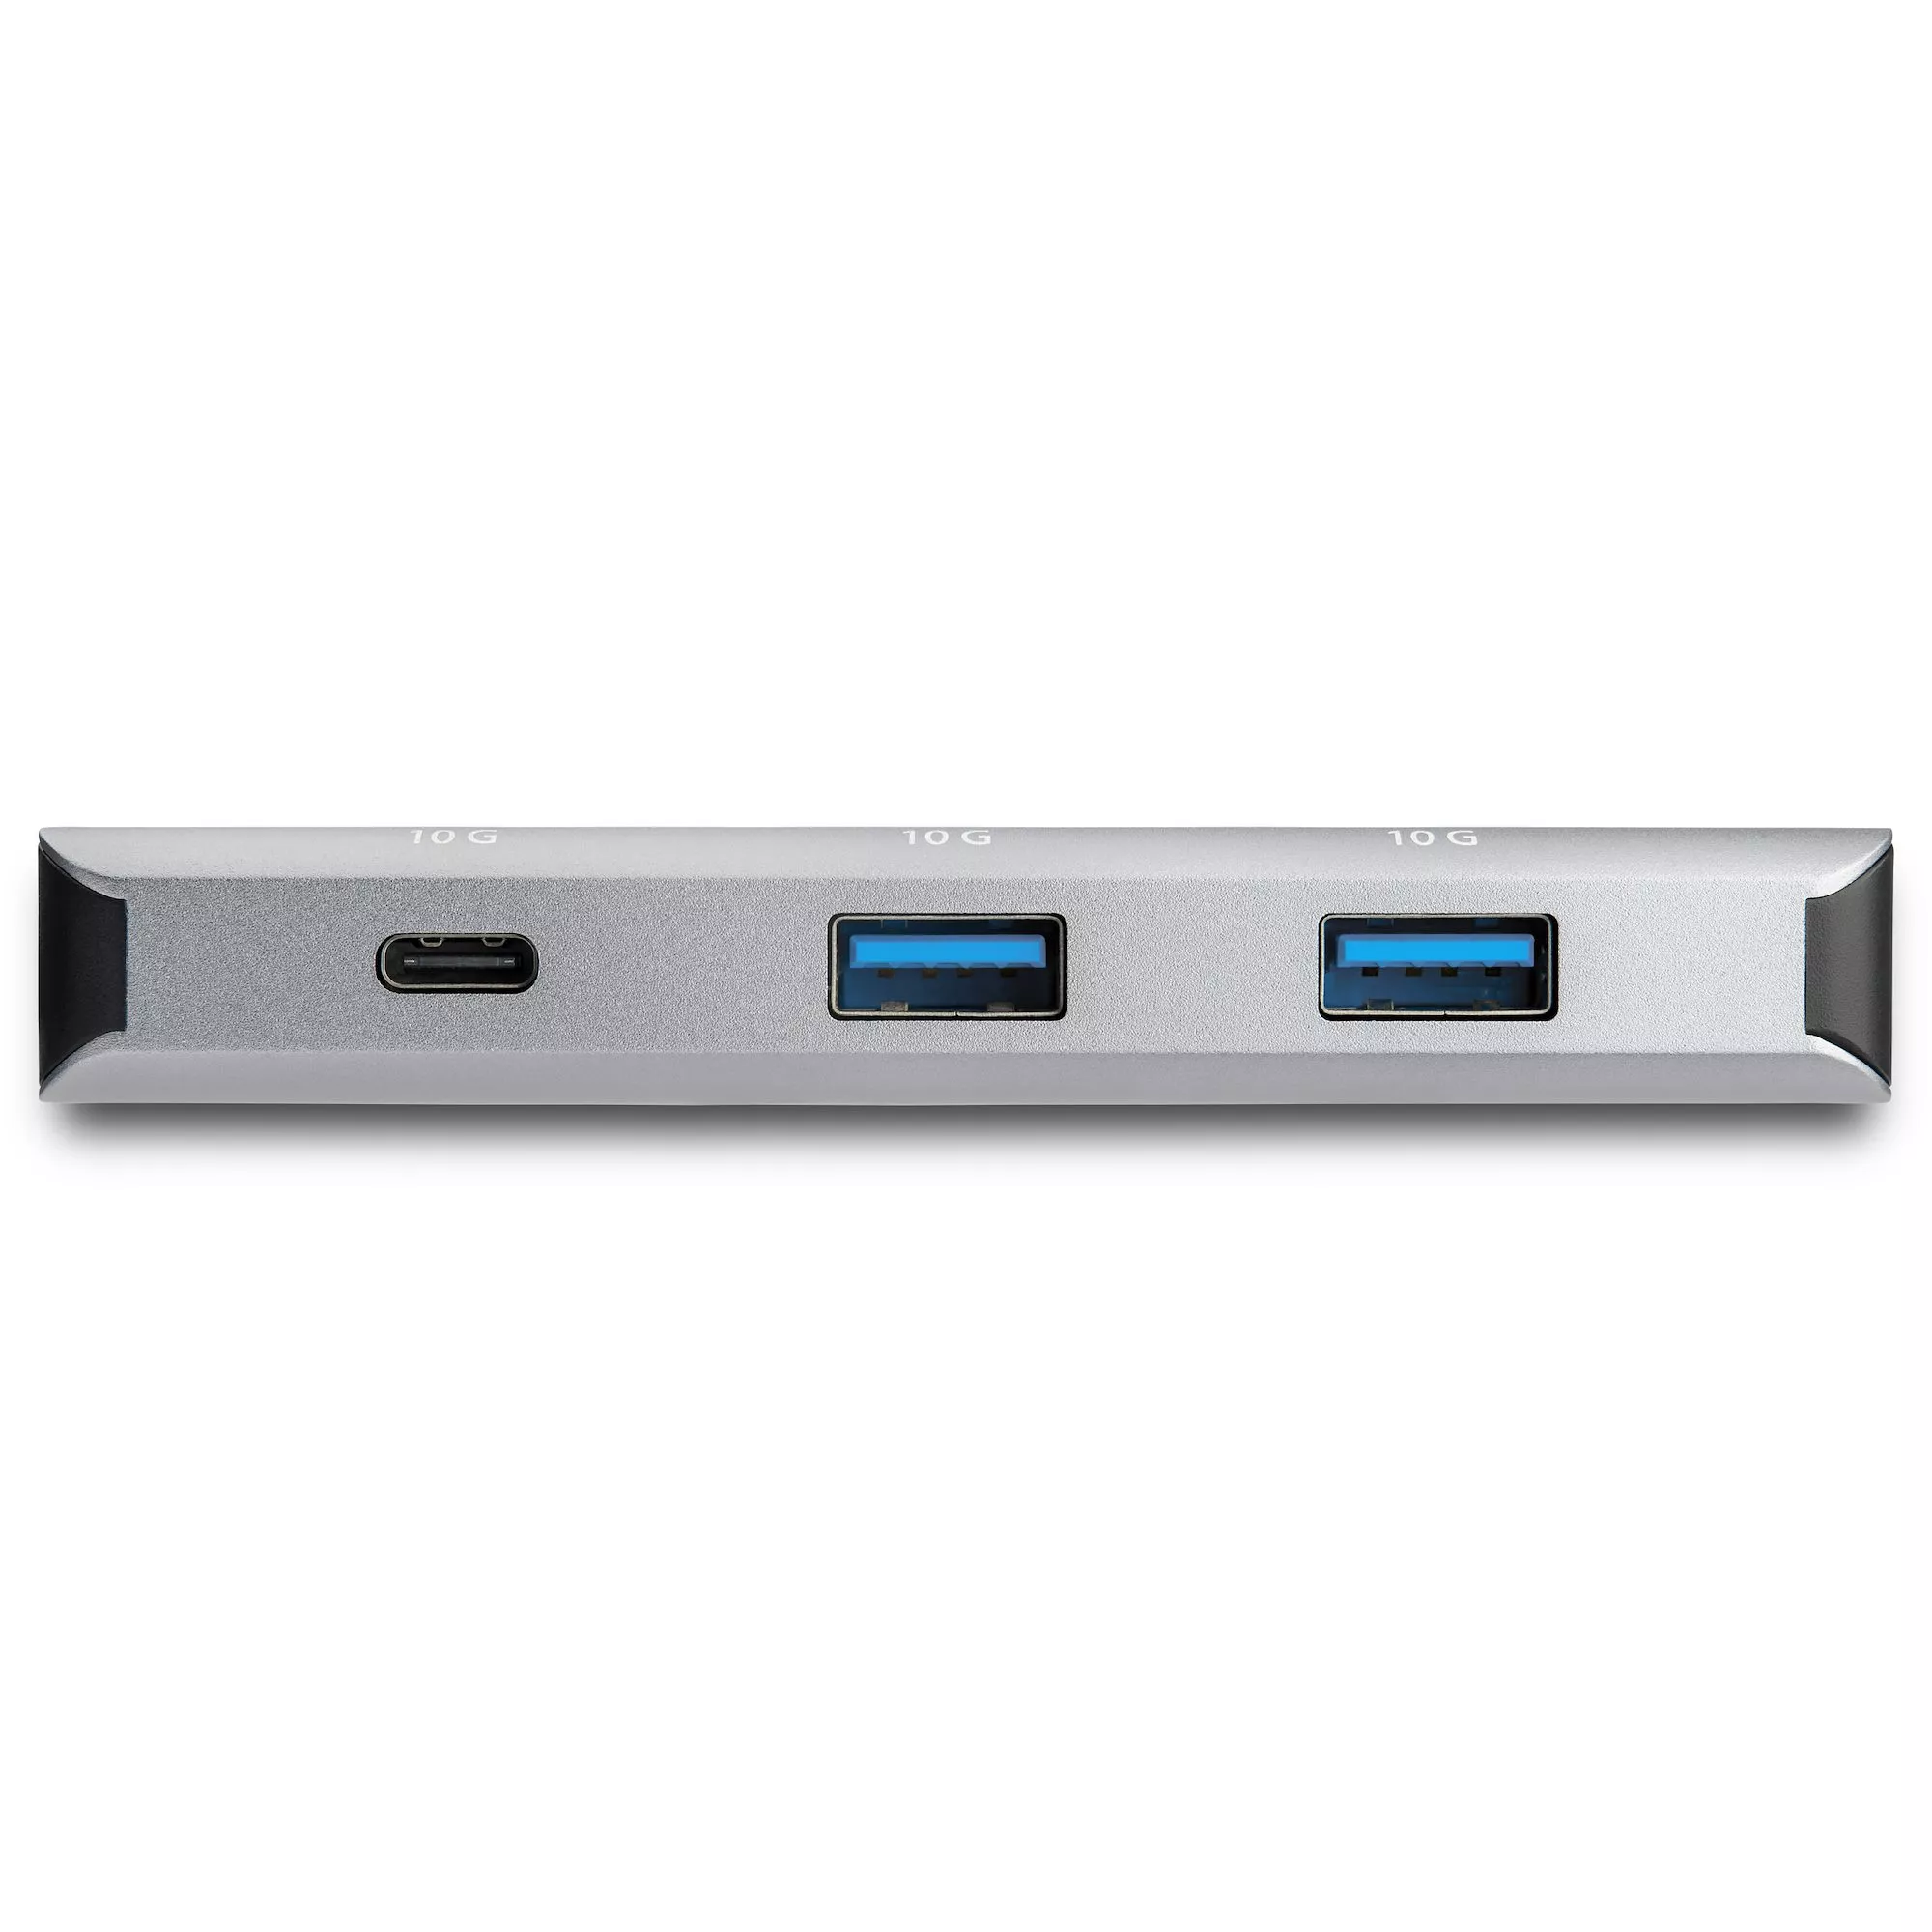 Vente StarTech.com Hub USB-C 4 Ports - 3 Ports StarTech.com au meilleur prix - visuel 8